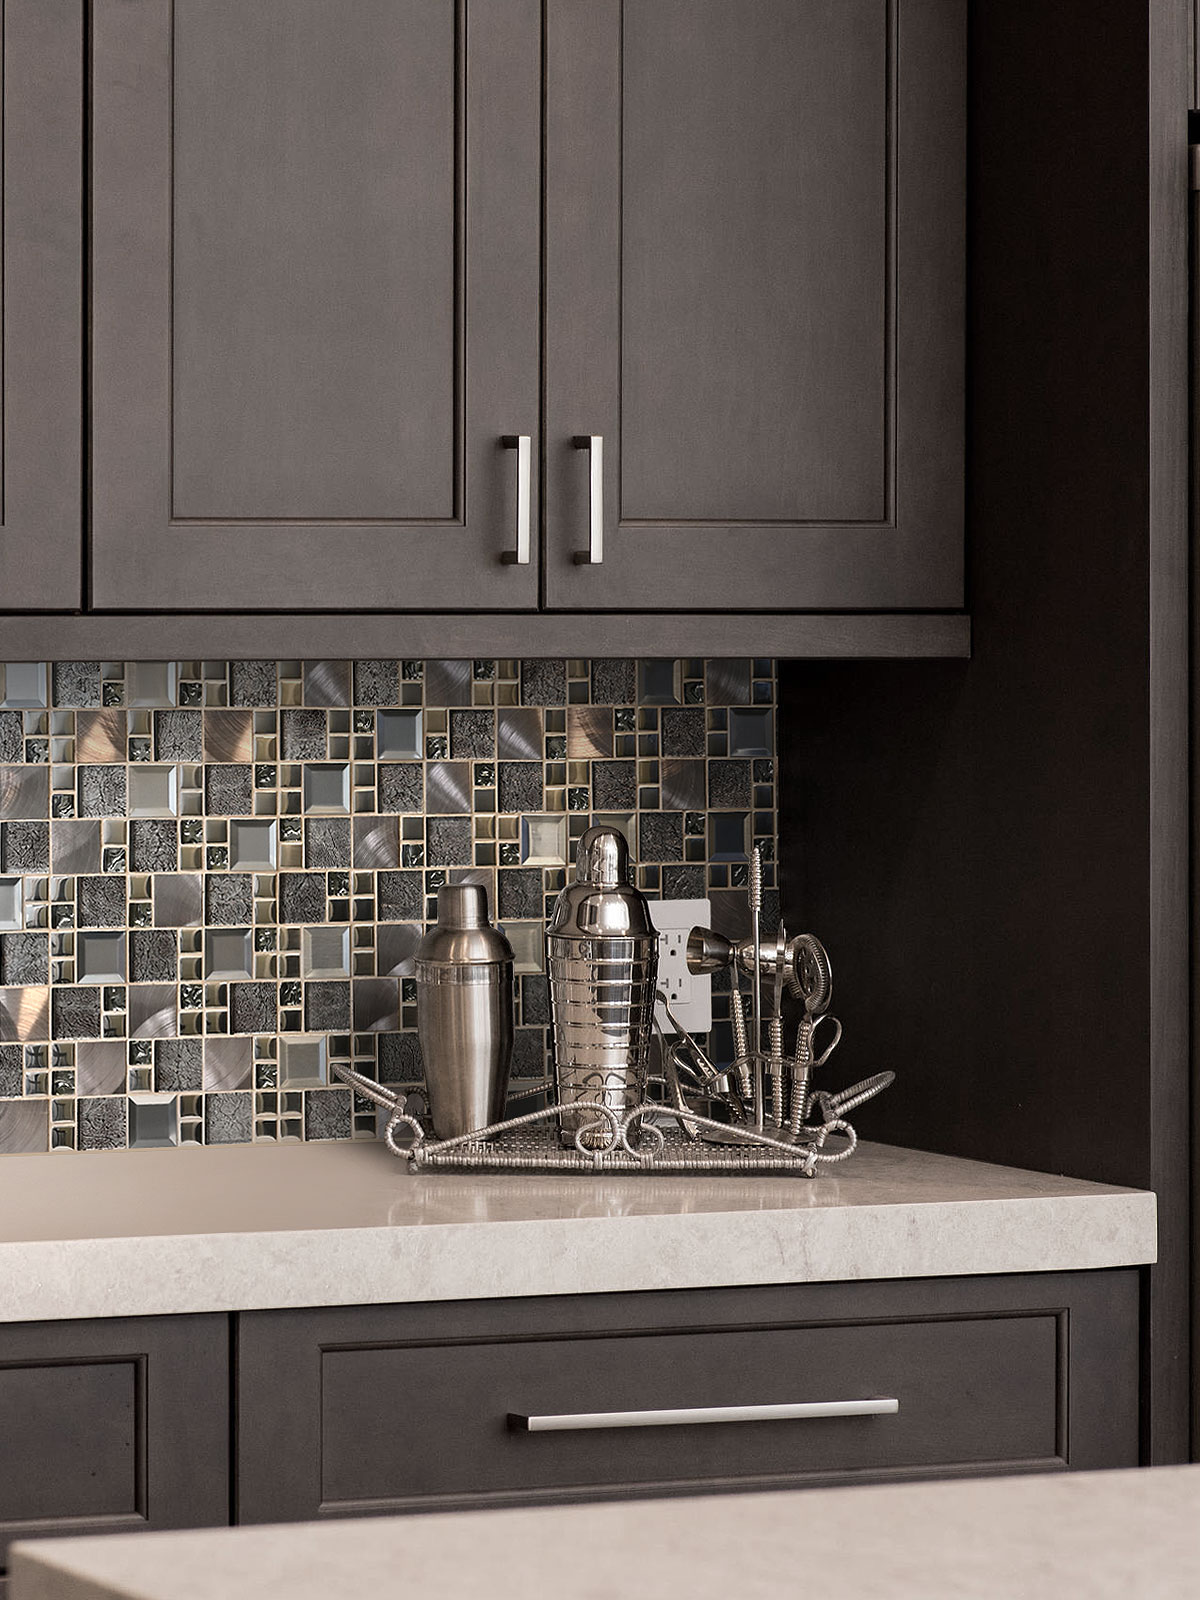 brown kitchen cabinets with copper glass backsplash tile BA62010